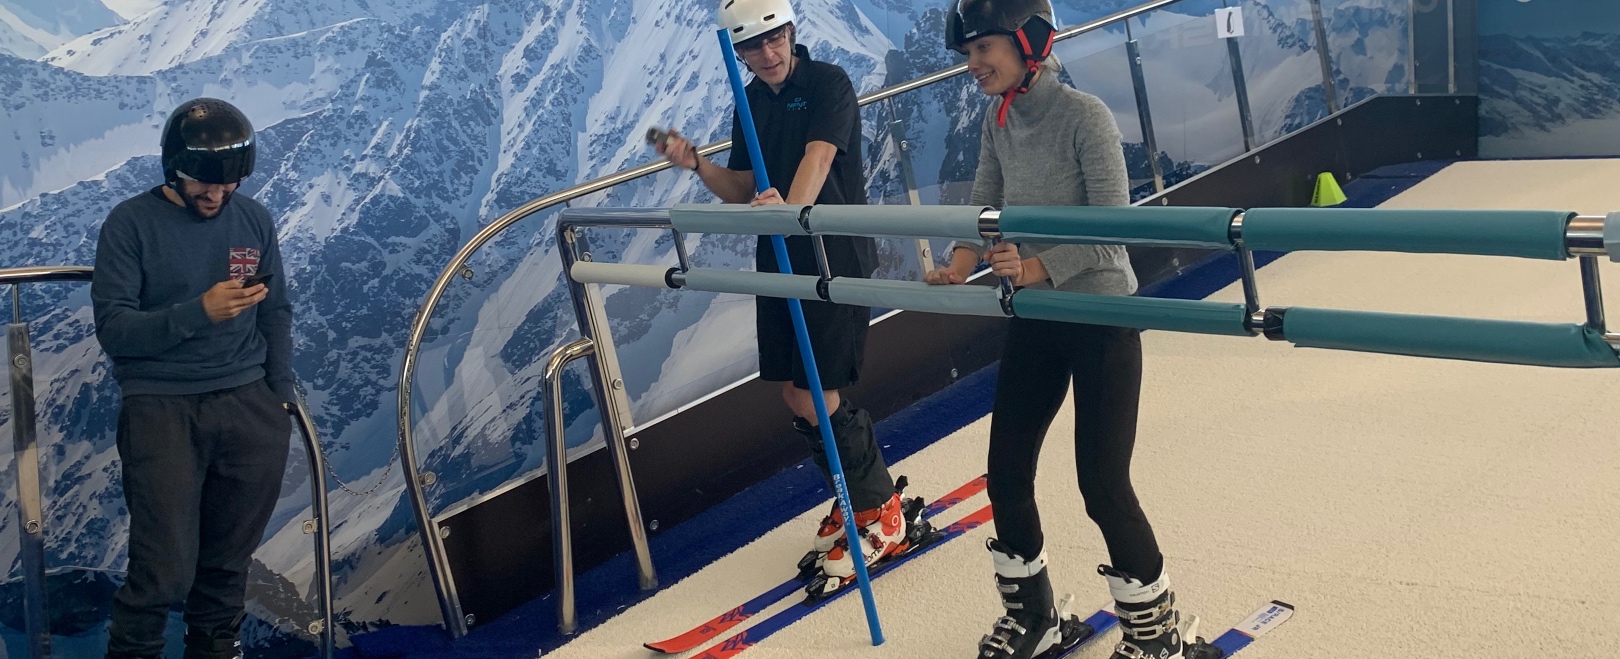 Cada vez más gente aprende a esquiar en pistas sin nieve  